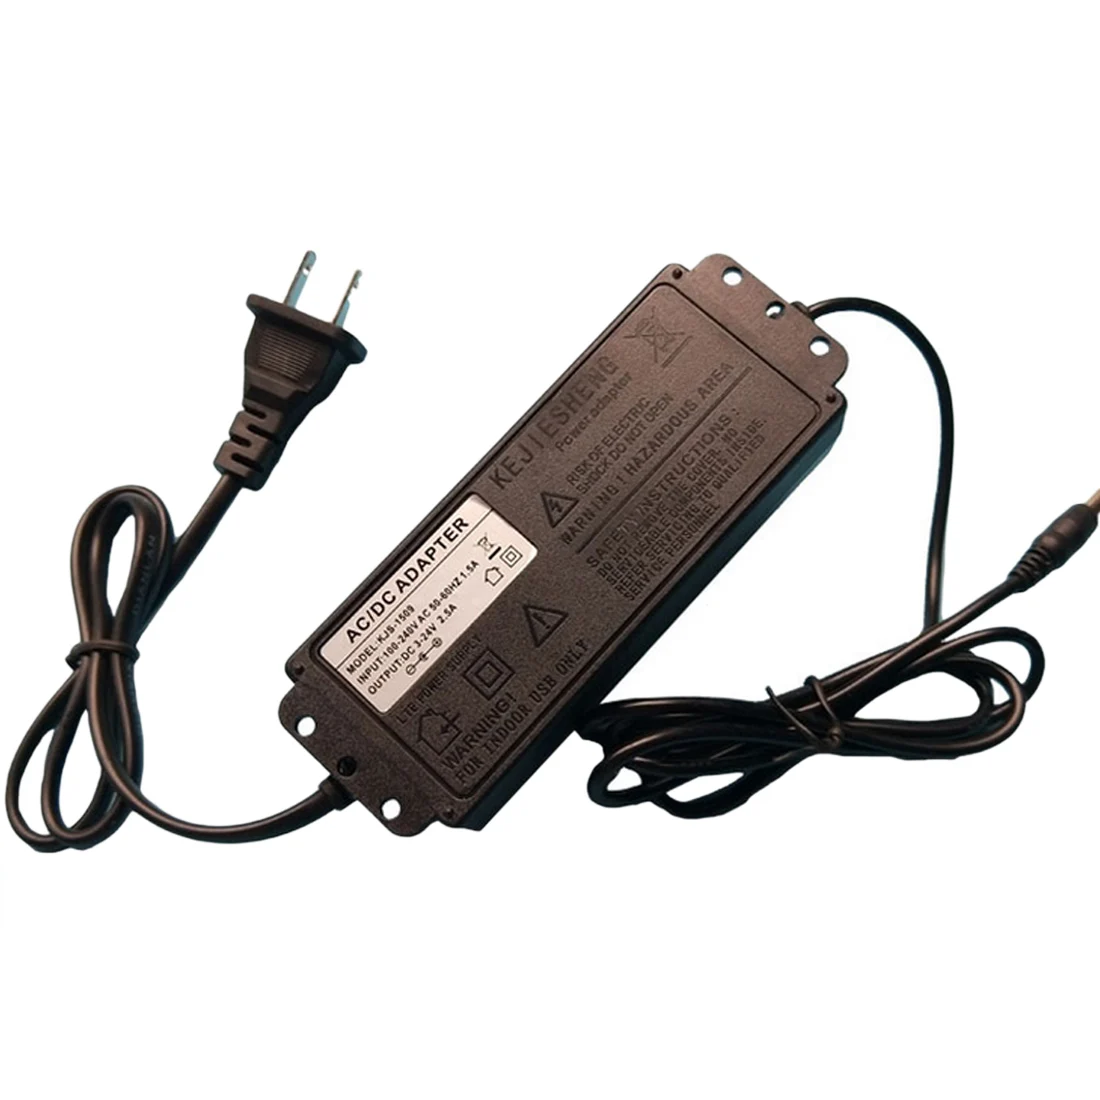 Регулируемый адаптер переменного тока 100-240 В, универсальный адаптер питания 24 В, адаптер постоянного тока 3-24 В, штепсельная вилка стандарта США и ЕС